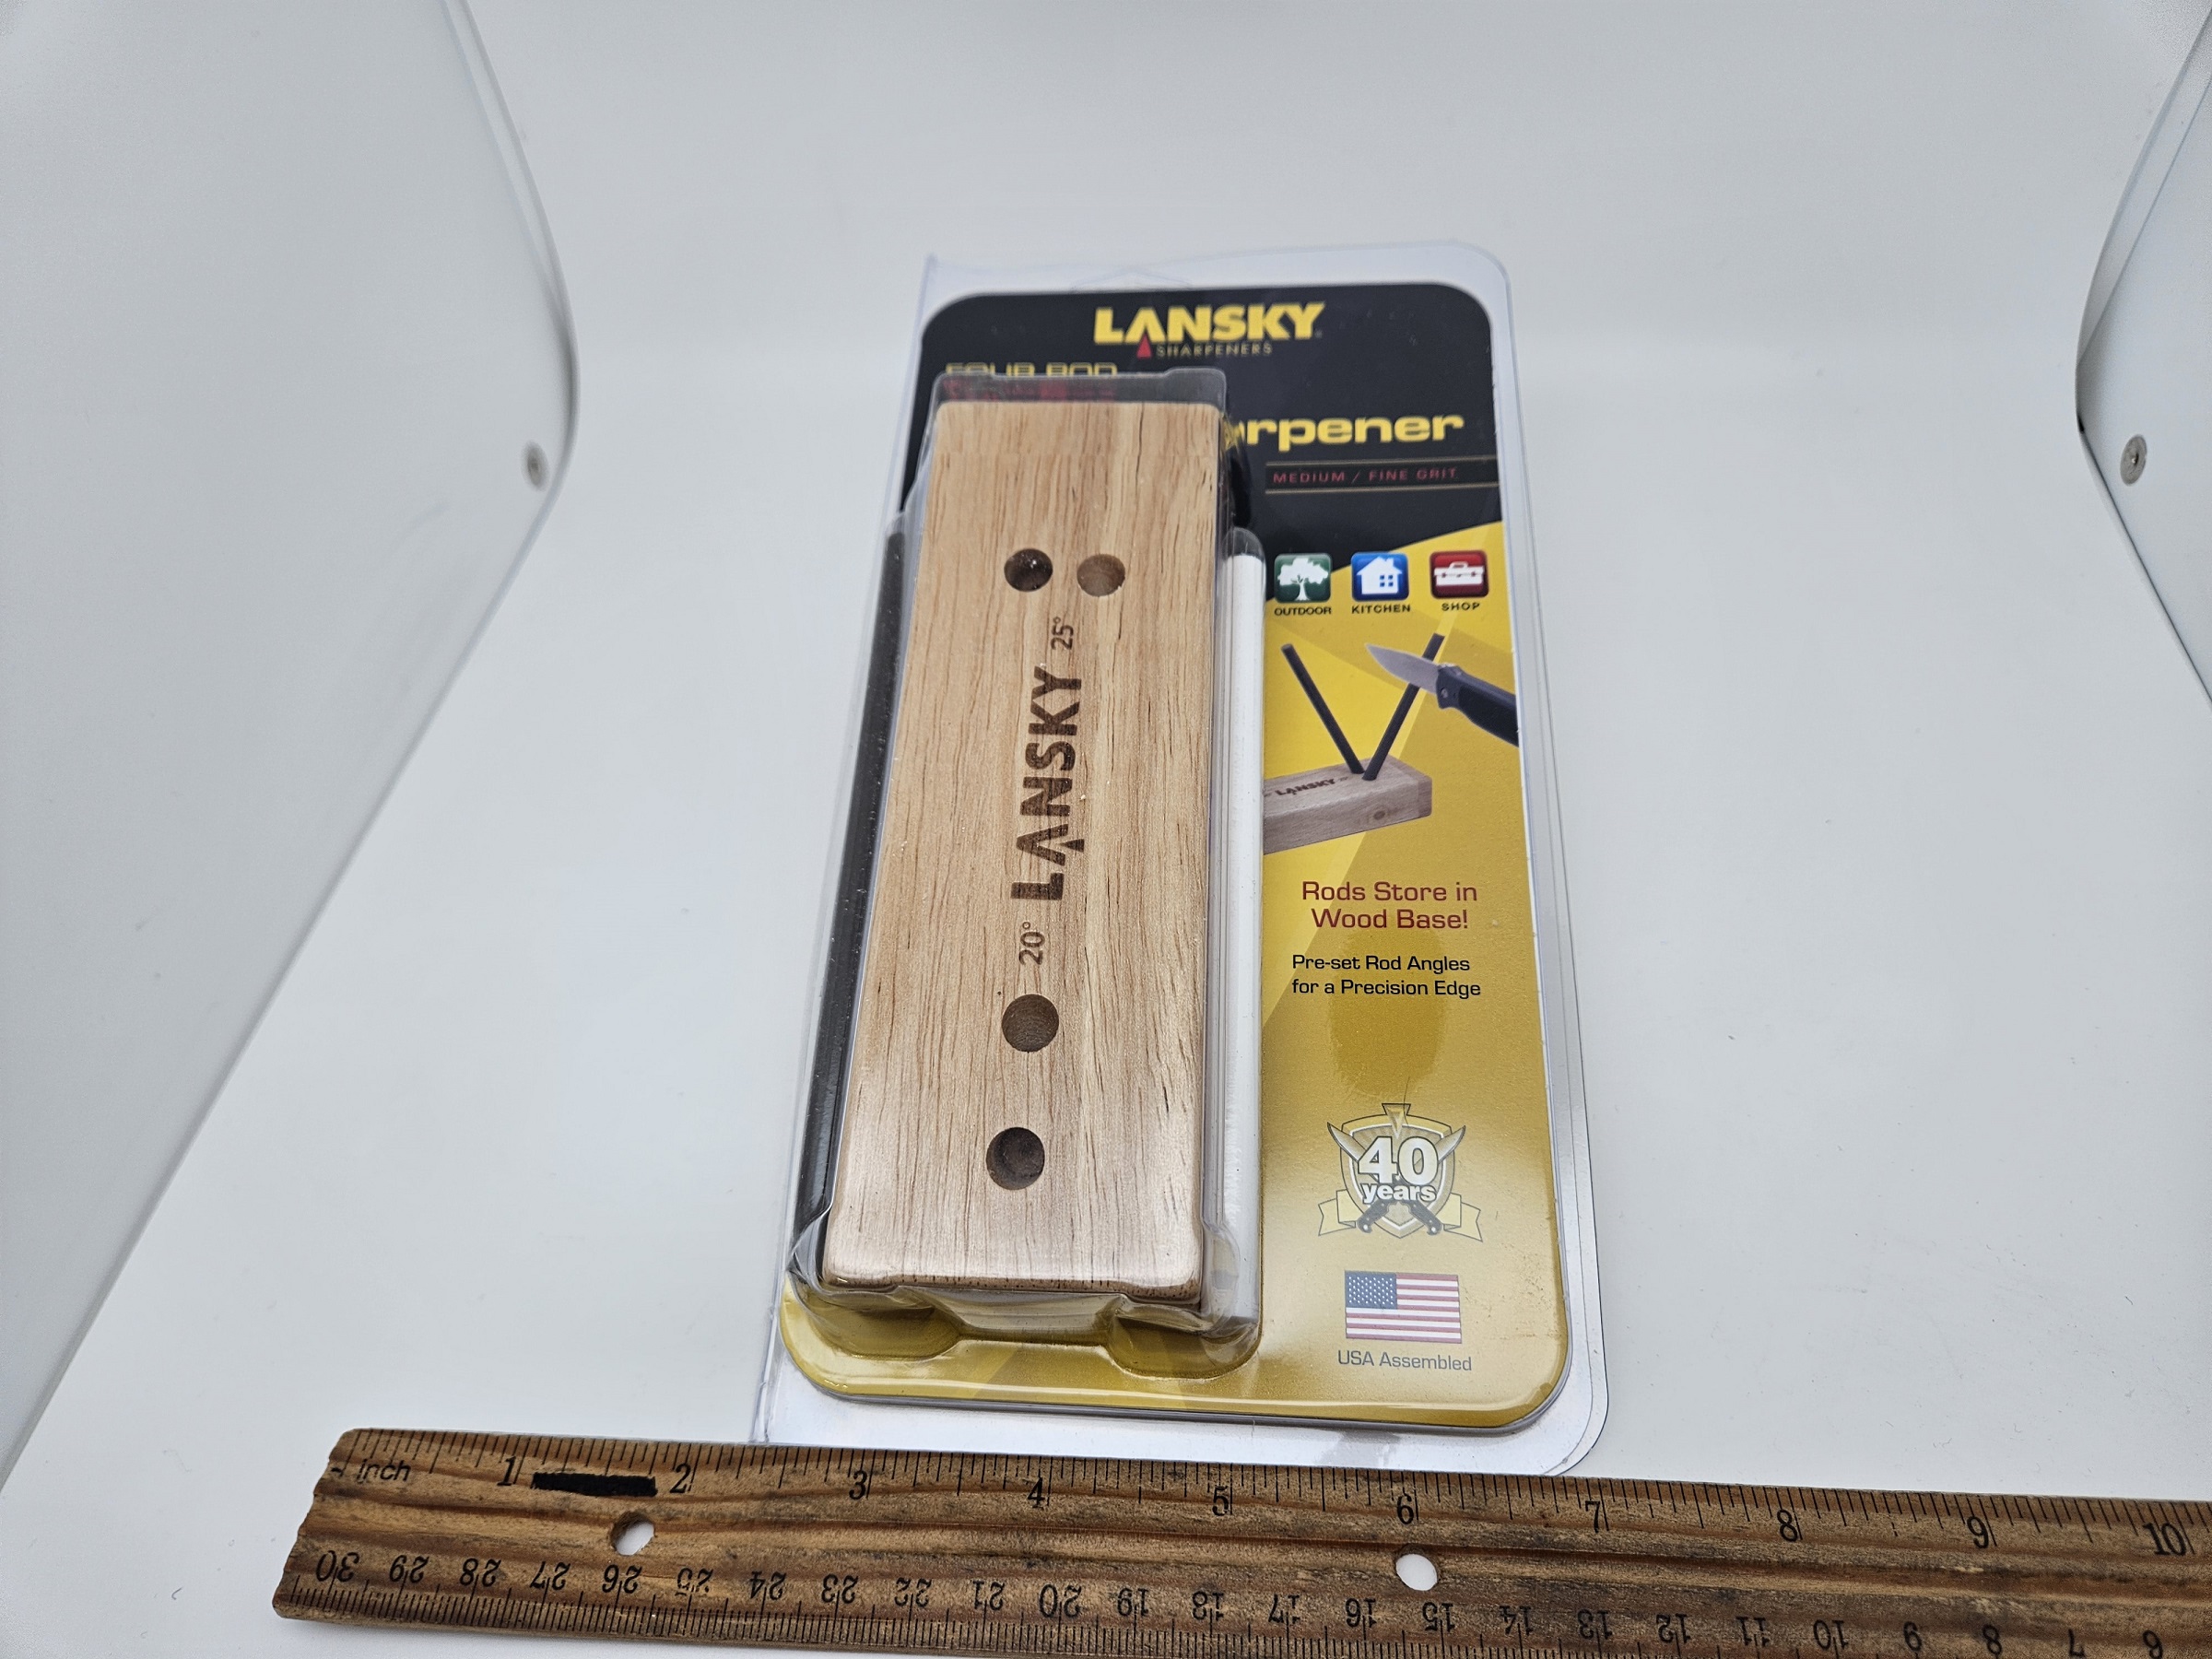 Lansky LS-33 4 Rod Ceramic Turn Box Knife Sharpener - Heimerdinger Cutlery